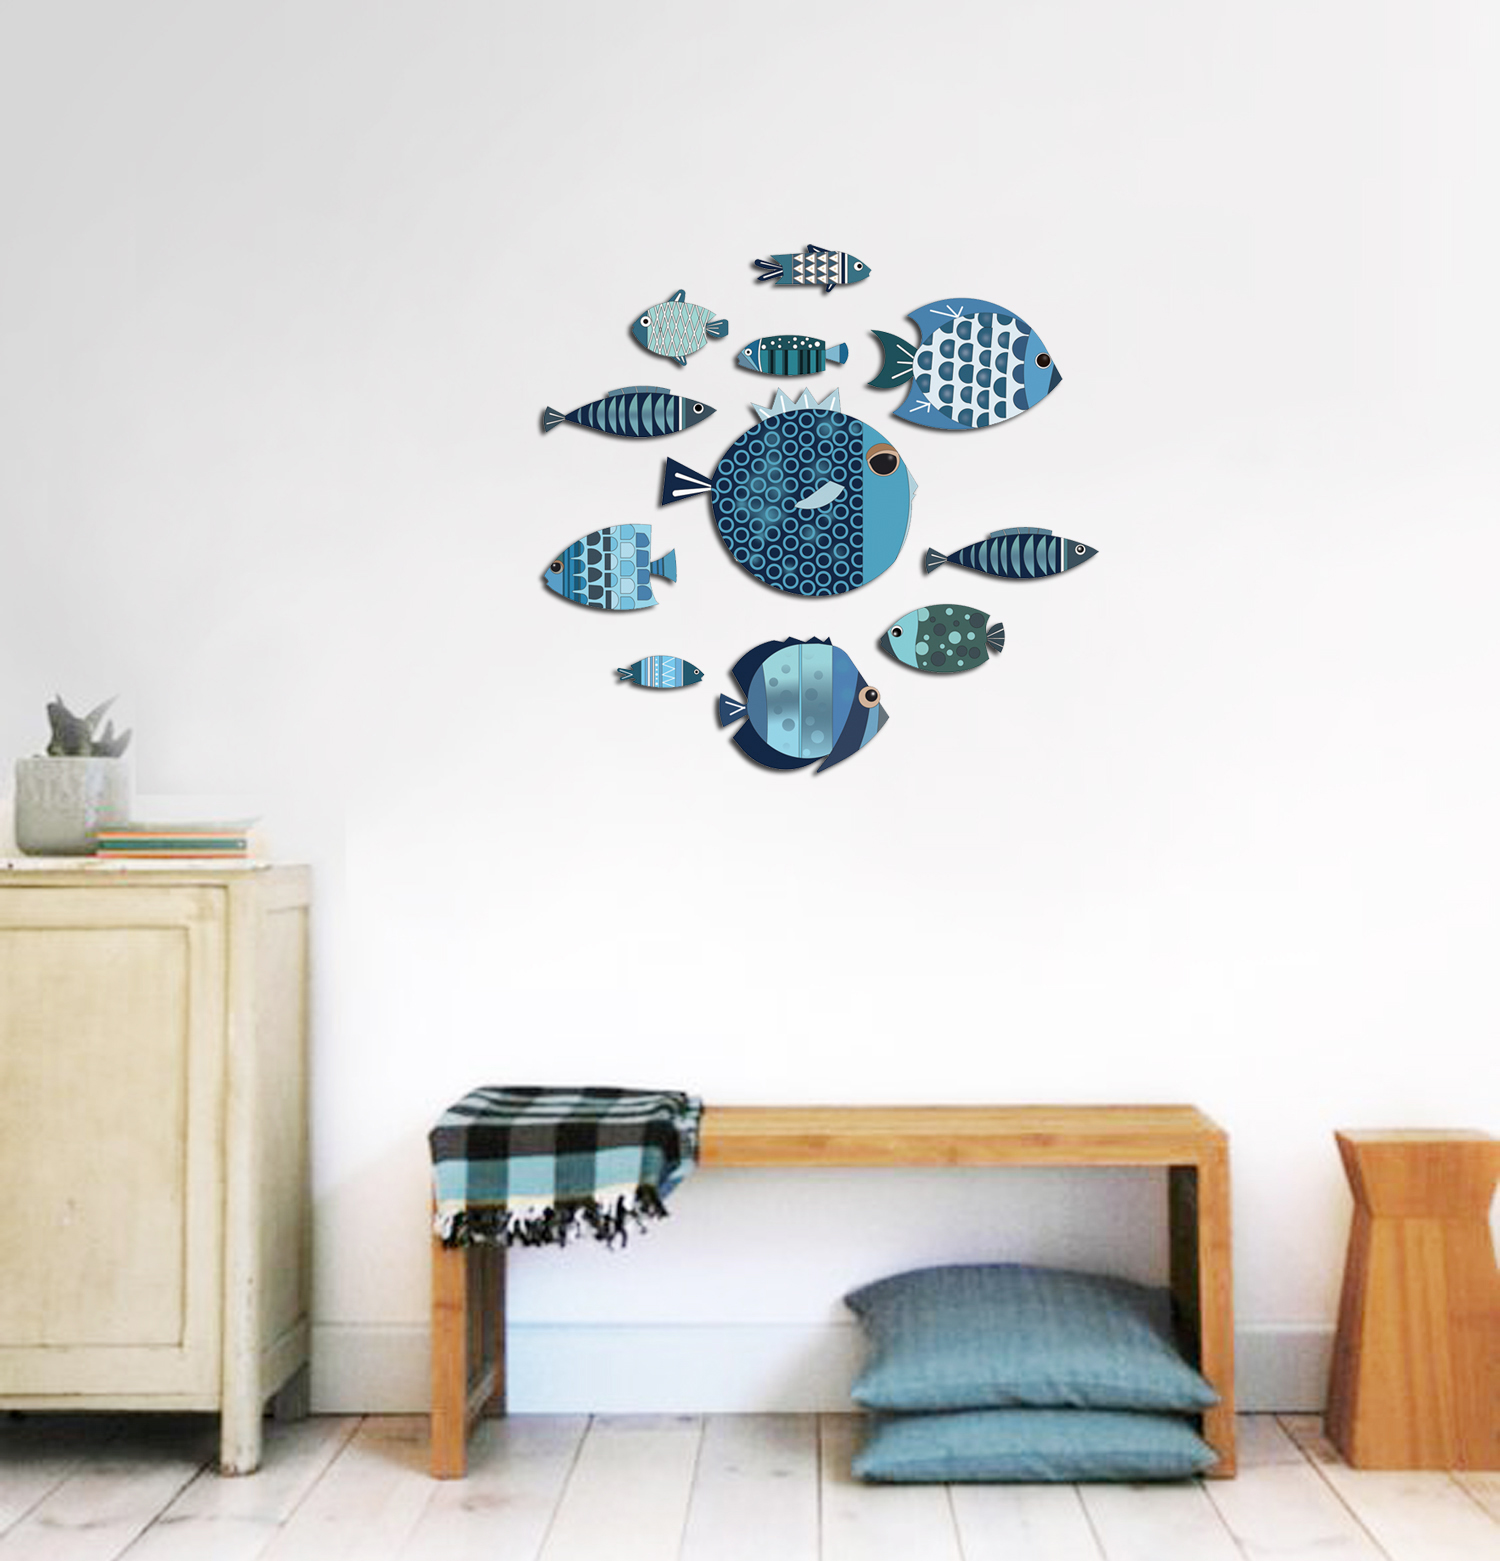 Tranh treo tường trang trí phòng khách, phòng ngủ - Bộ tranh The Little Blue Fishes (Những chú cá xanh bé xinh) hiện đại - Tặng kèm băng dính 3M chuyên dụng - BF16